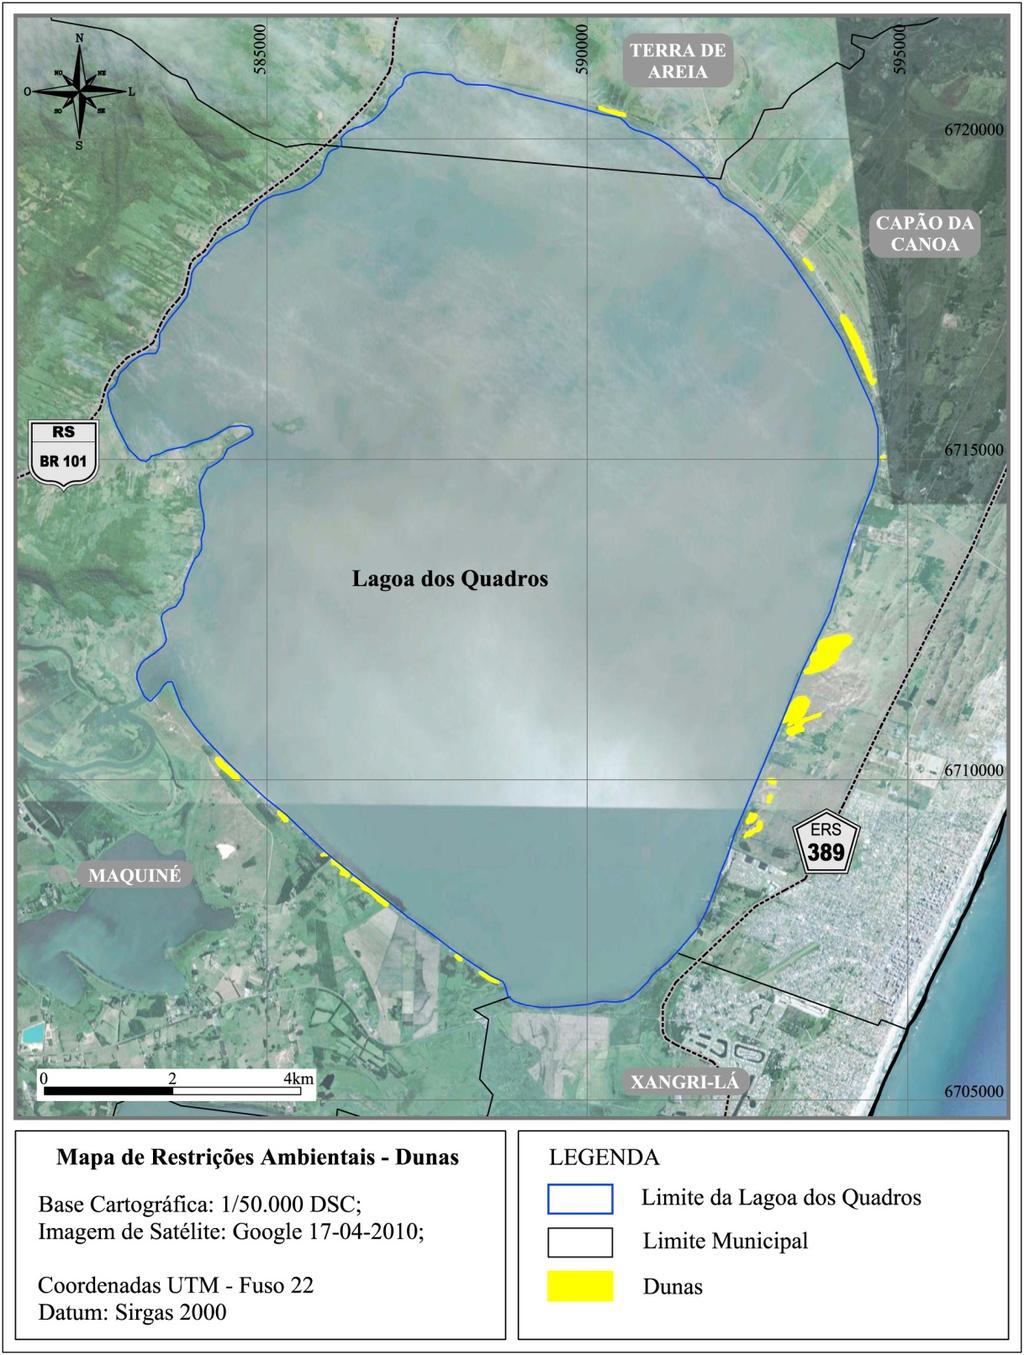 44 Alterações Ambientais dos Recursos Hídricos e das Dunas na Orla da Lagoa dos Quadros Litoral Norte do RS Figura 7. Mapa de Restrições Ambientais Dunas - no entorno da Lagoa dos Quadros.